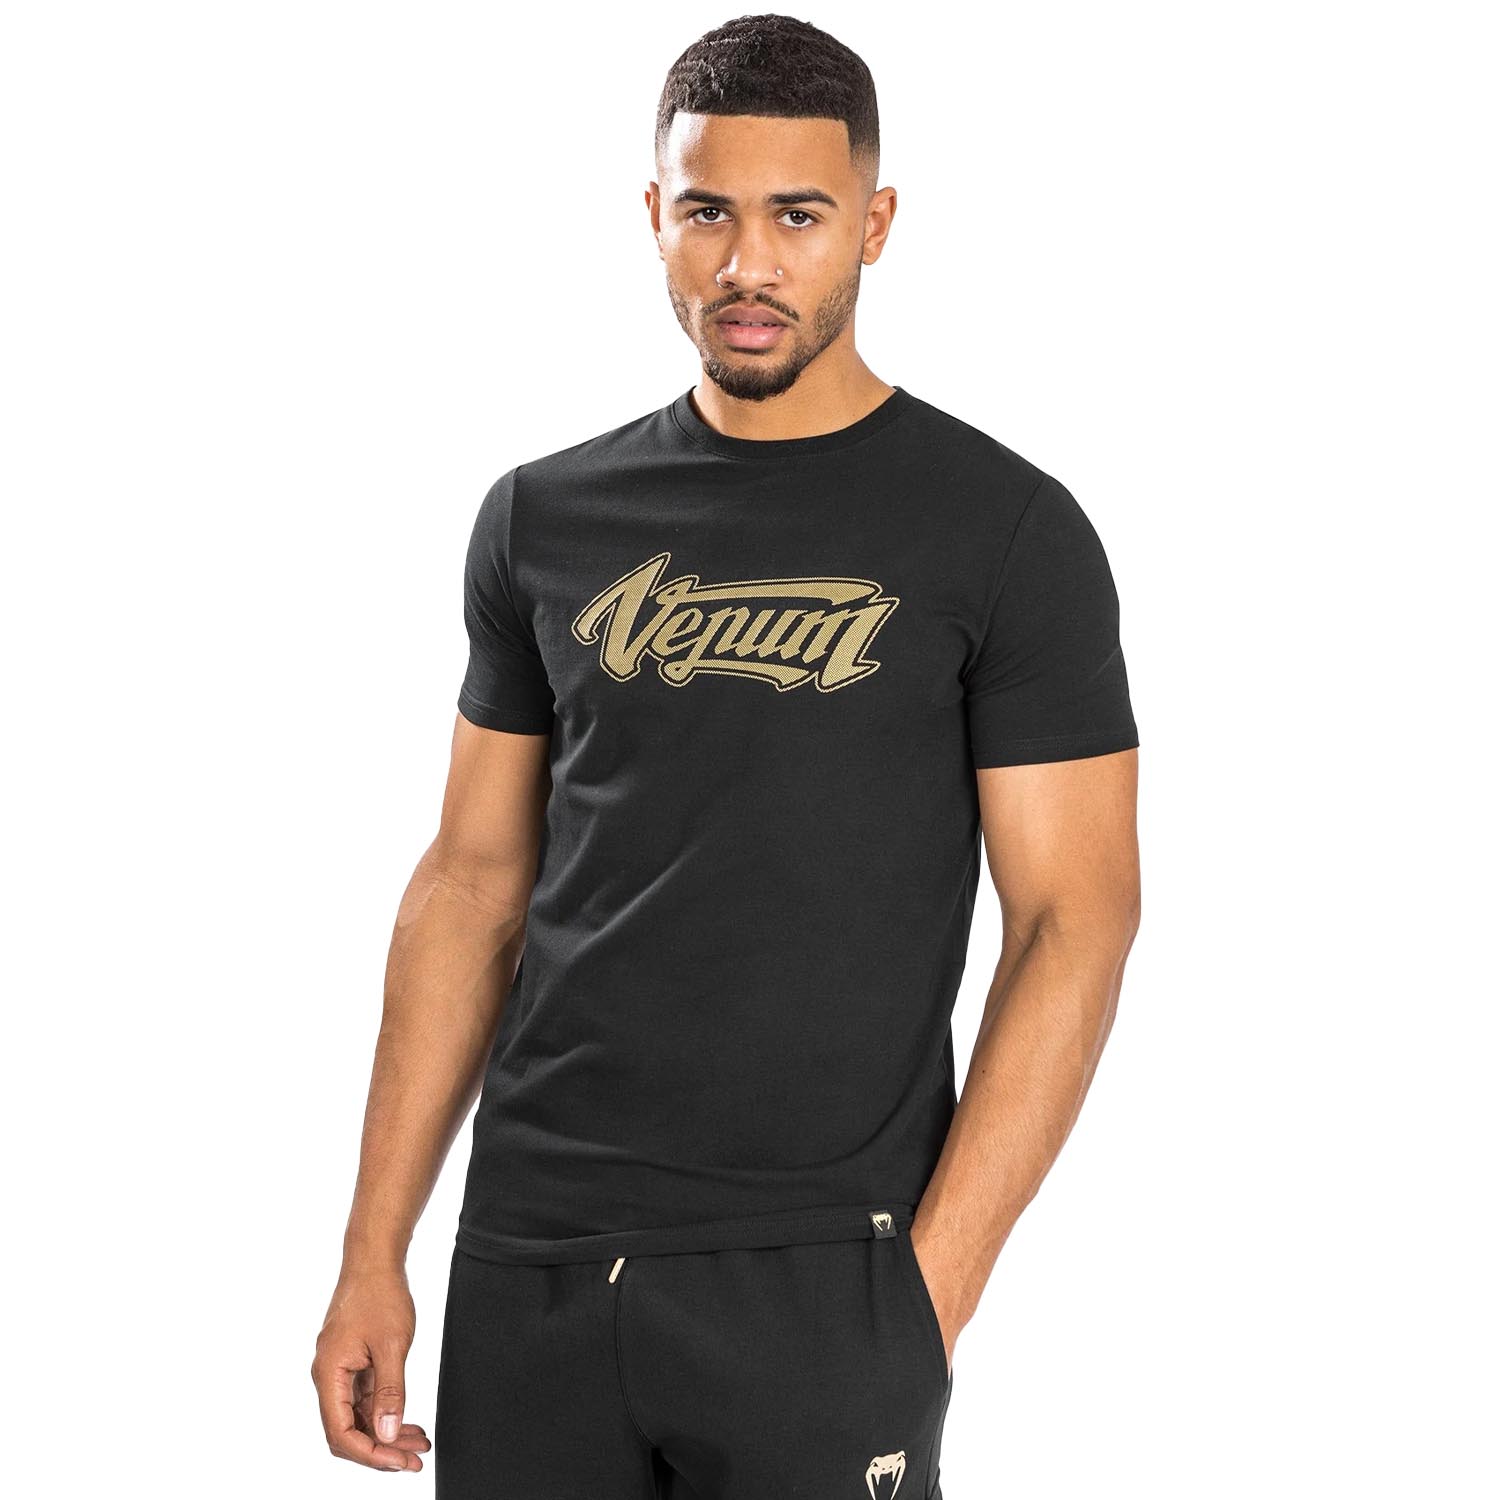 VENUM T-Shirt, Absolute 2.0, schwarz-gold